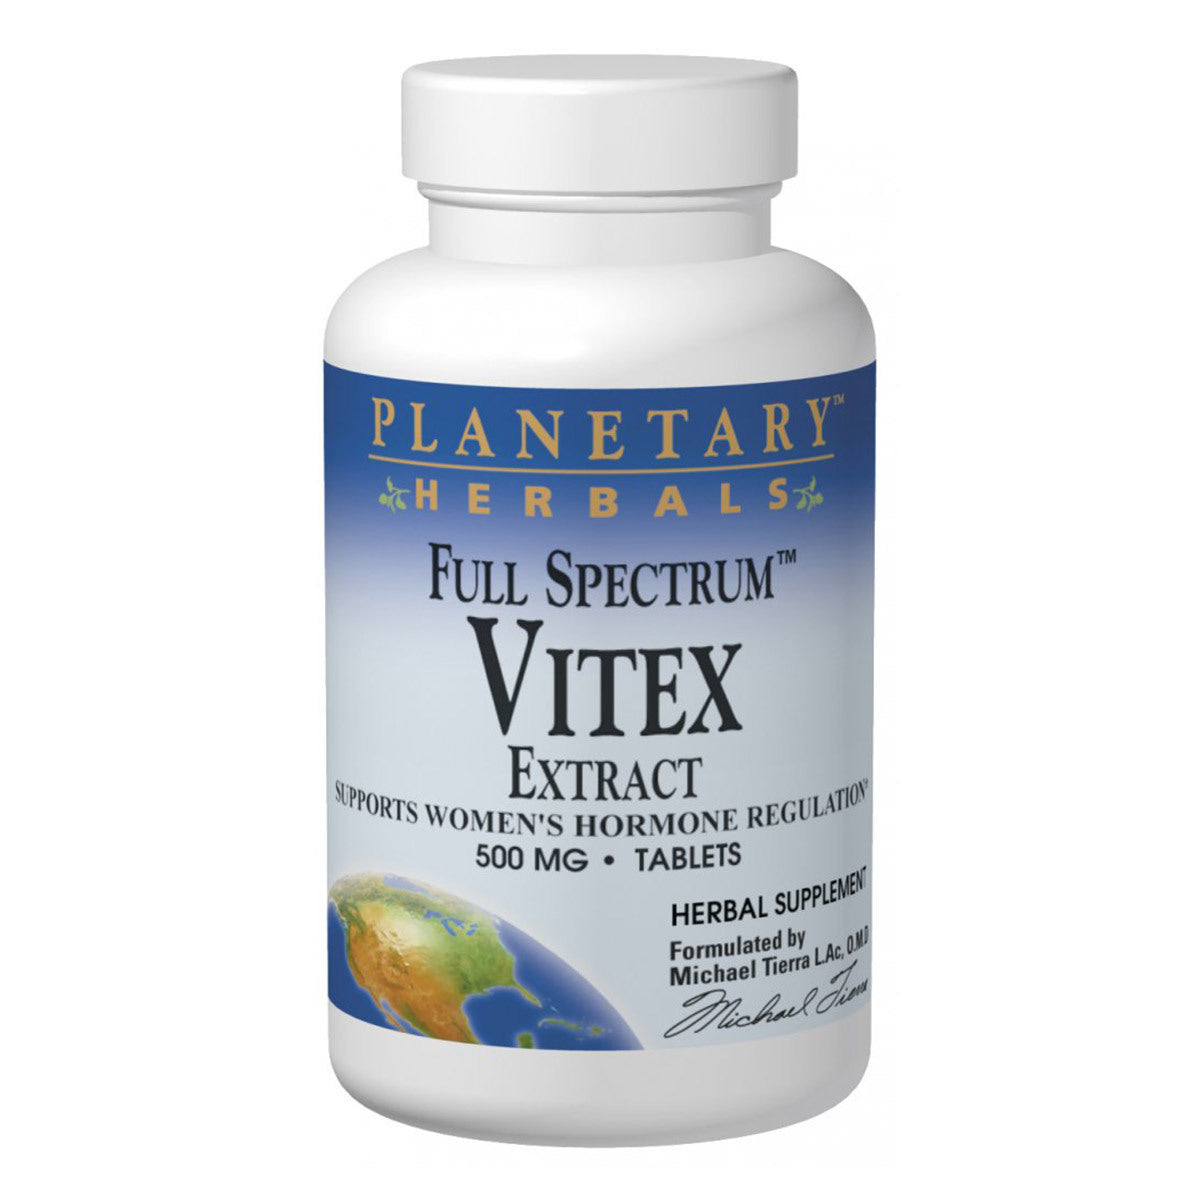 Primary image of Full Spectrum Vitex Extract